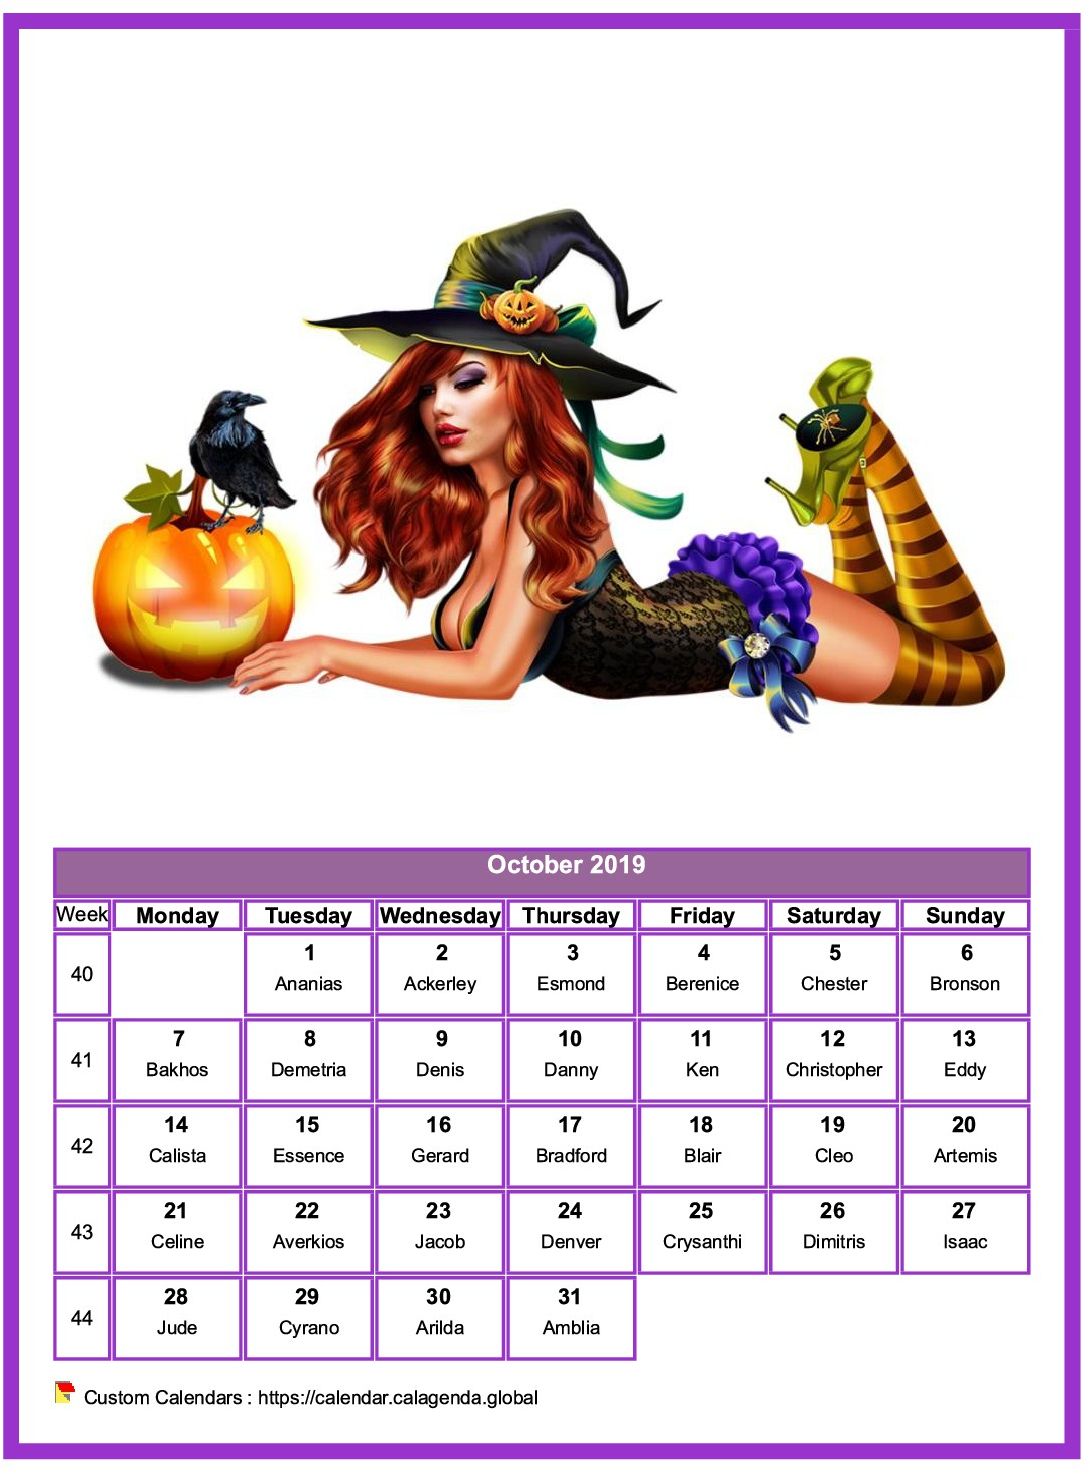 Calendar October 2019 women